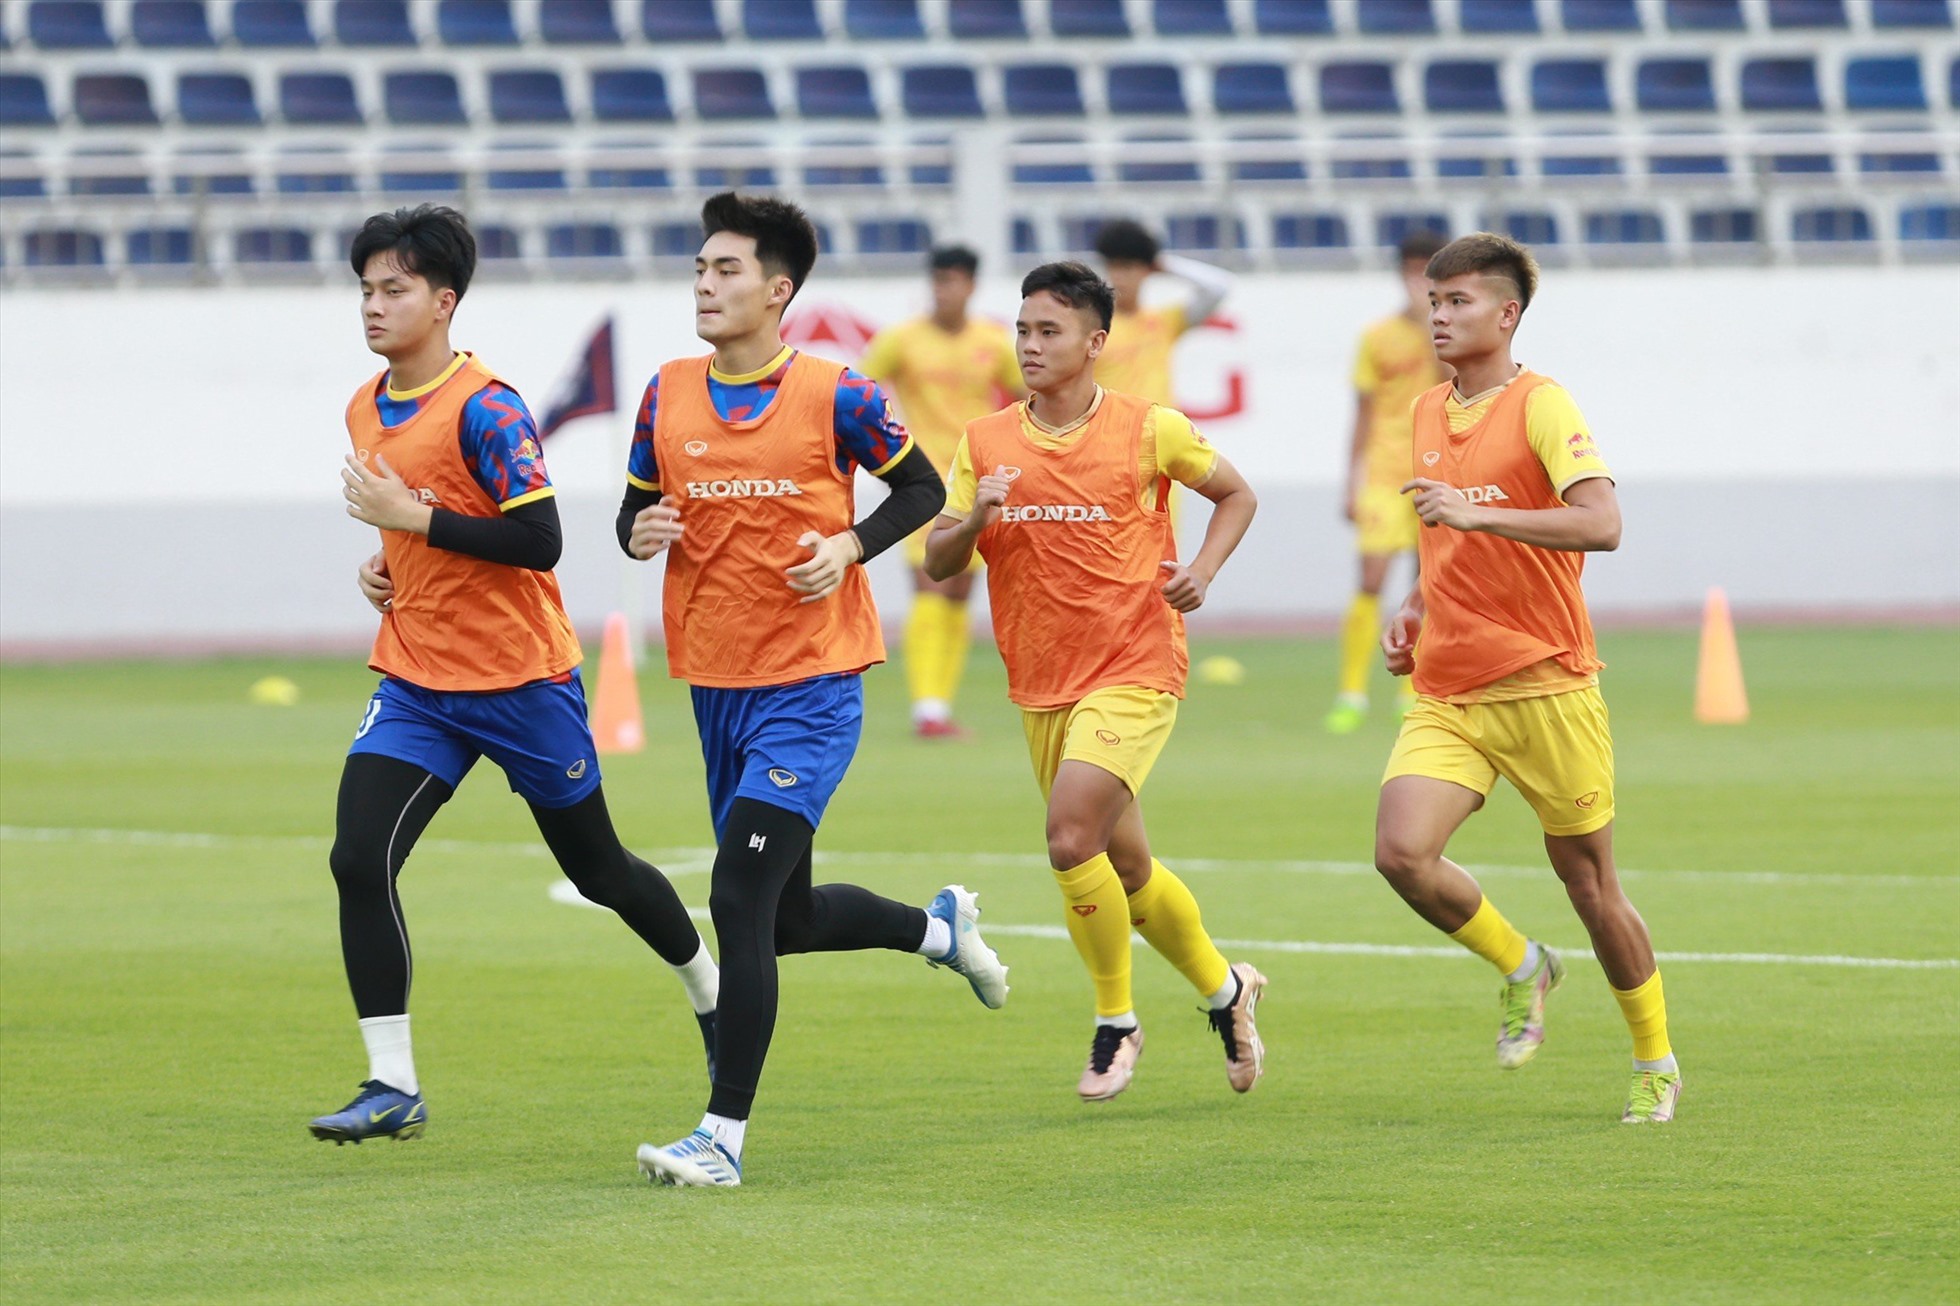 24 cầu thủ đầu tiên của U22 Việt Nam ra sân tập vào chiều 17.4 với những bài kiểm tra sức bền cơ bản của ban huấn luyện. Bảy cầu thủ còn lại sẽ hội quân vào ngày 18.4 và cũng được kiểm tra tình hình sức khỏe sau khi thi đấu xong vòng 7 V.League.